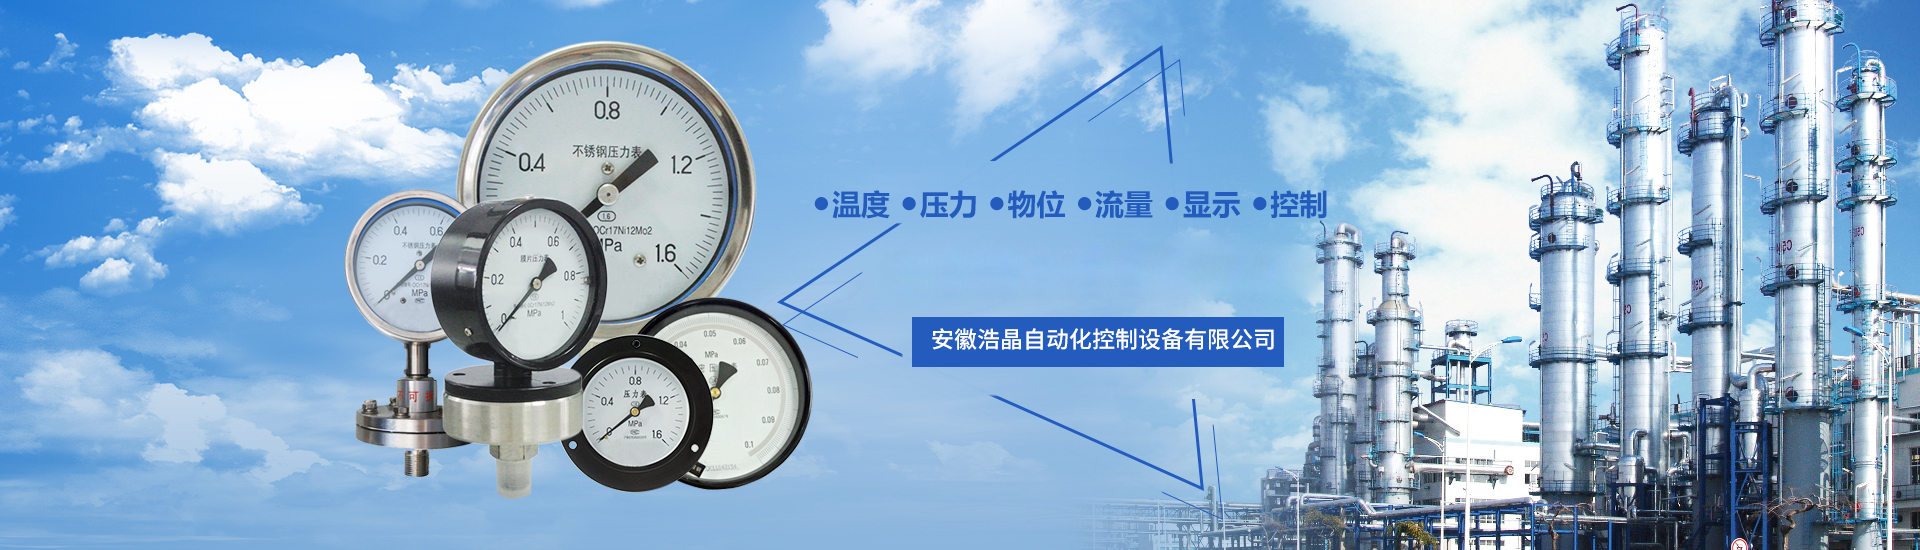 安徽浩晶自动化控制设备有限公司